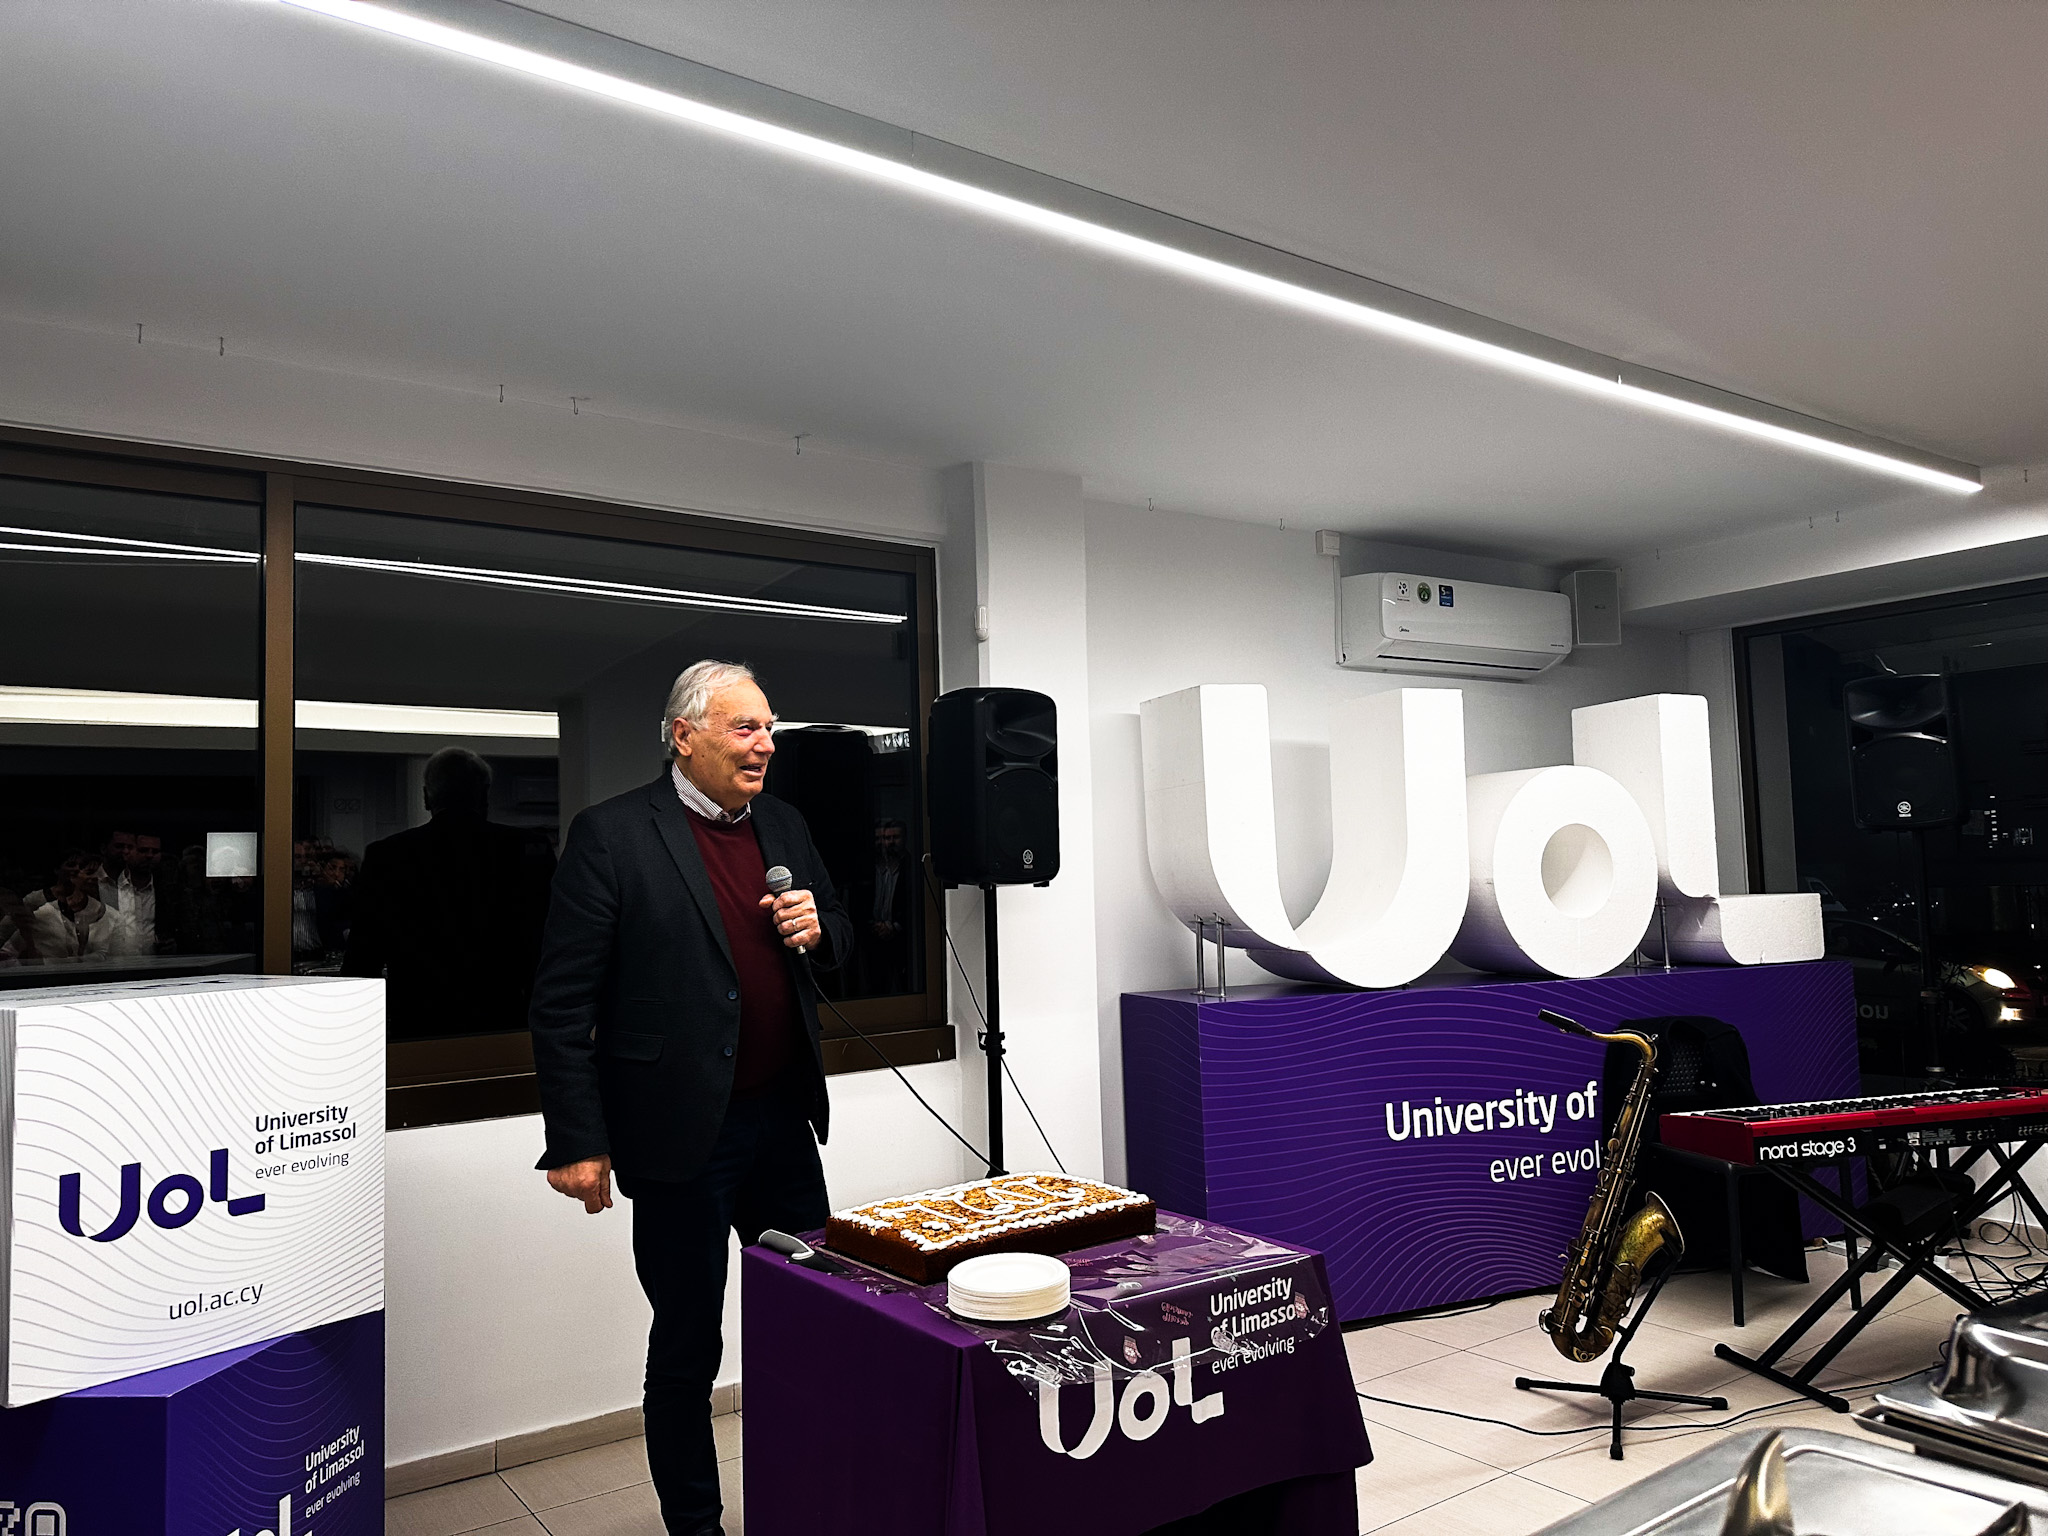 Πανεπιστήμιο Λεμεσού (UoL): Καλωσόρισε τη νέα χρονιά με λαμπερά επιτεύγματα